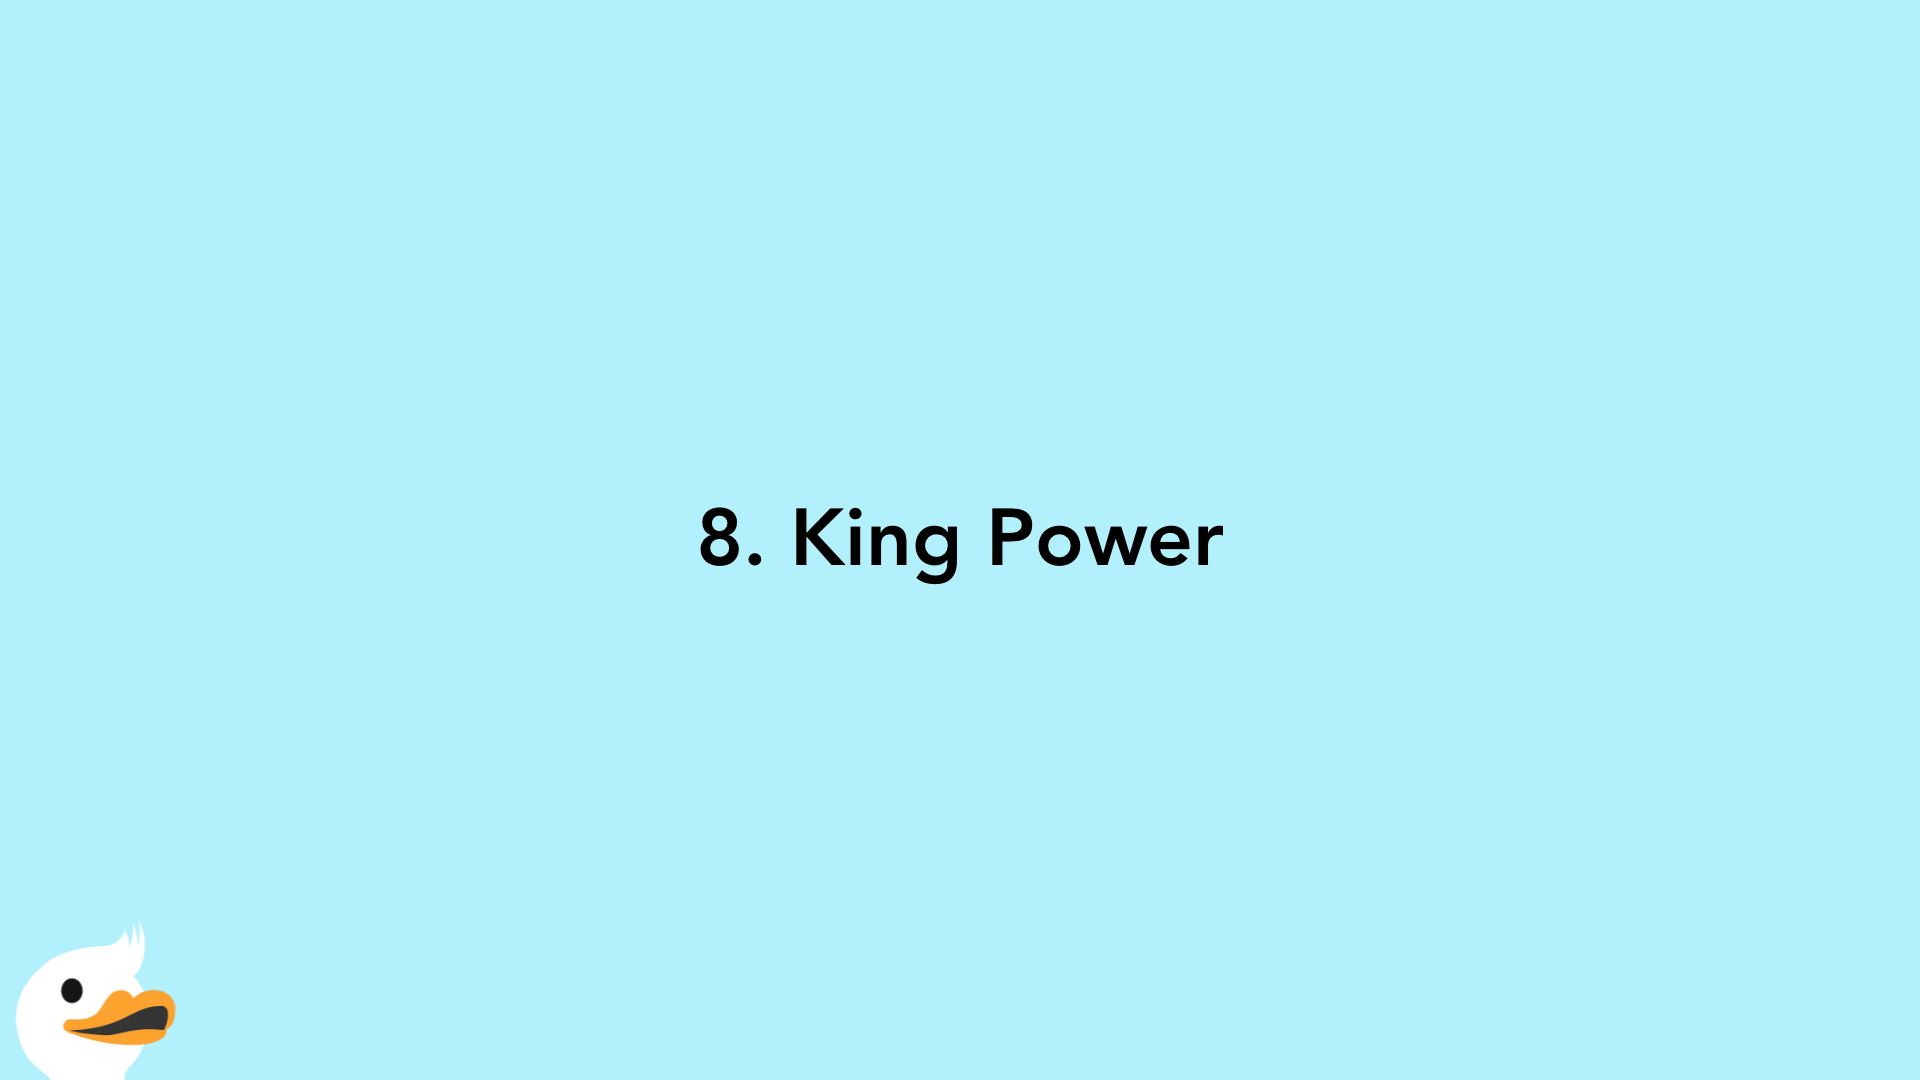 8. King Power